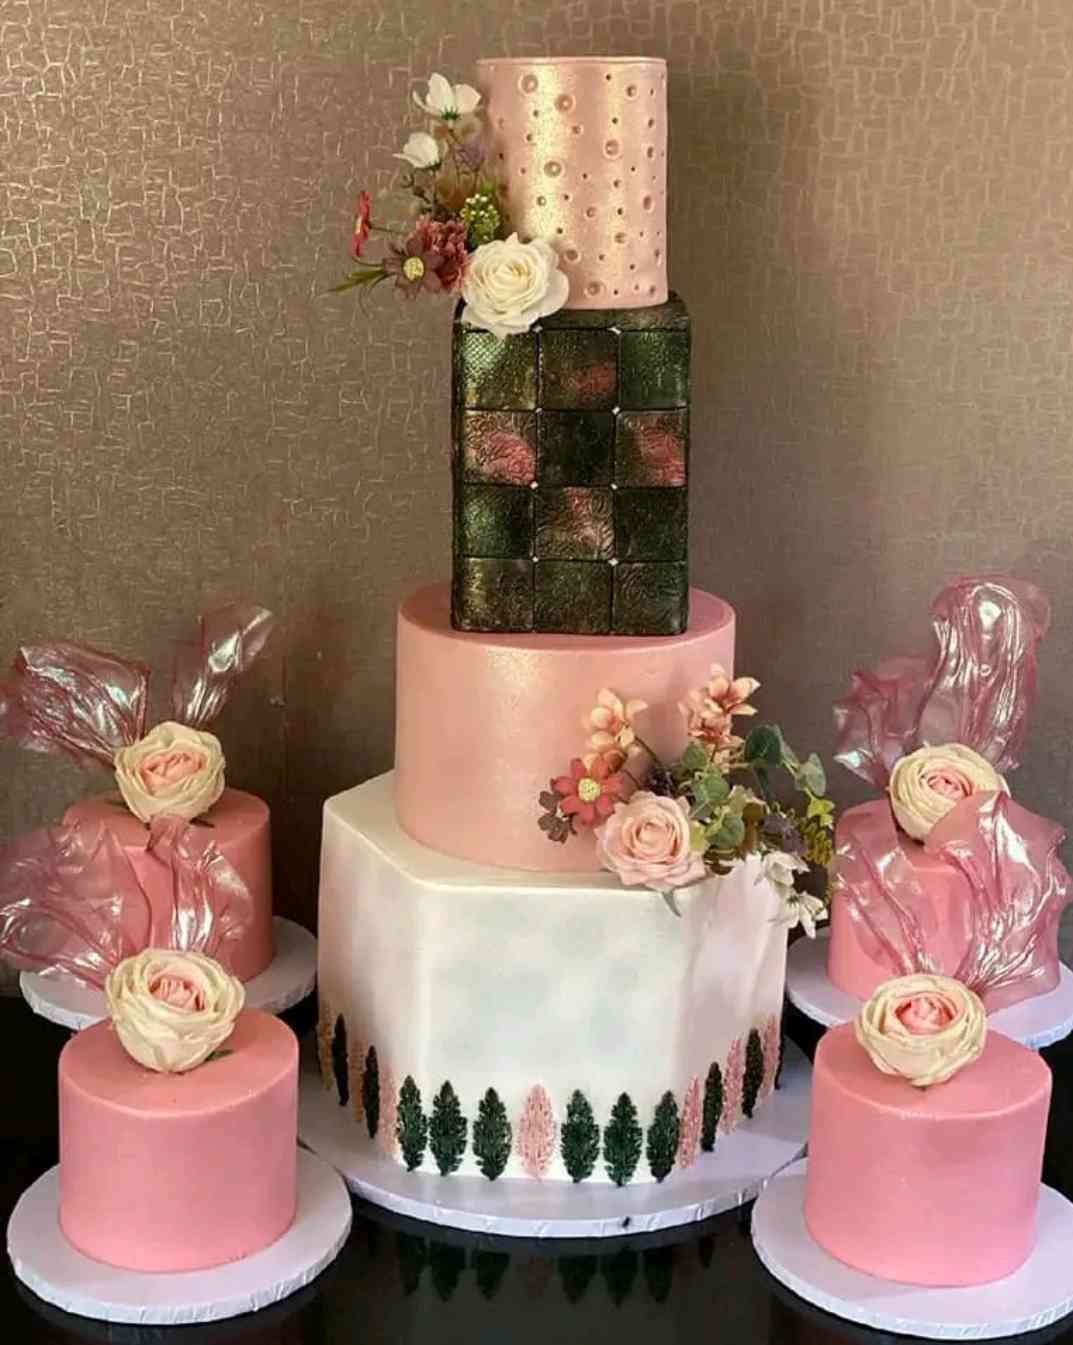 BEAUTY BLENDED WEDDING CAKE 